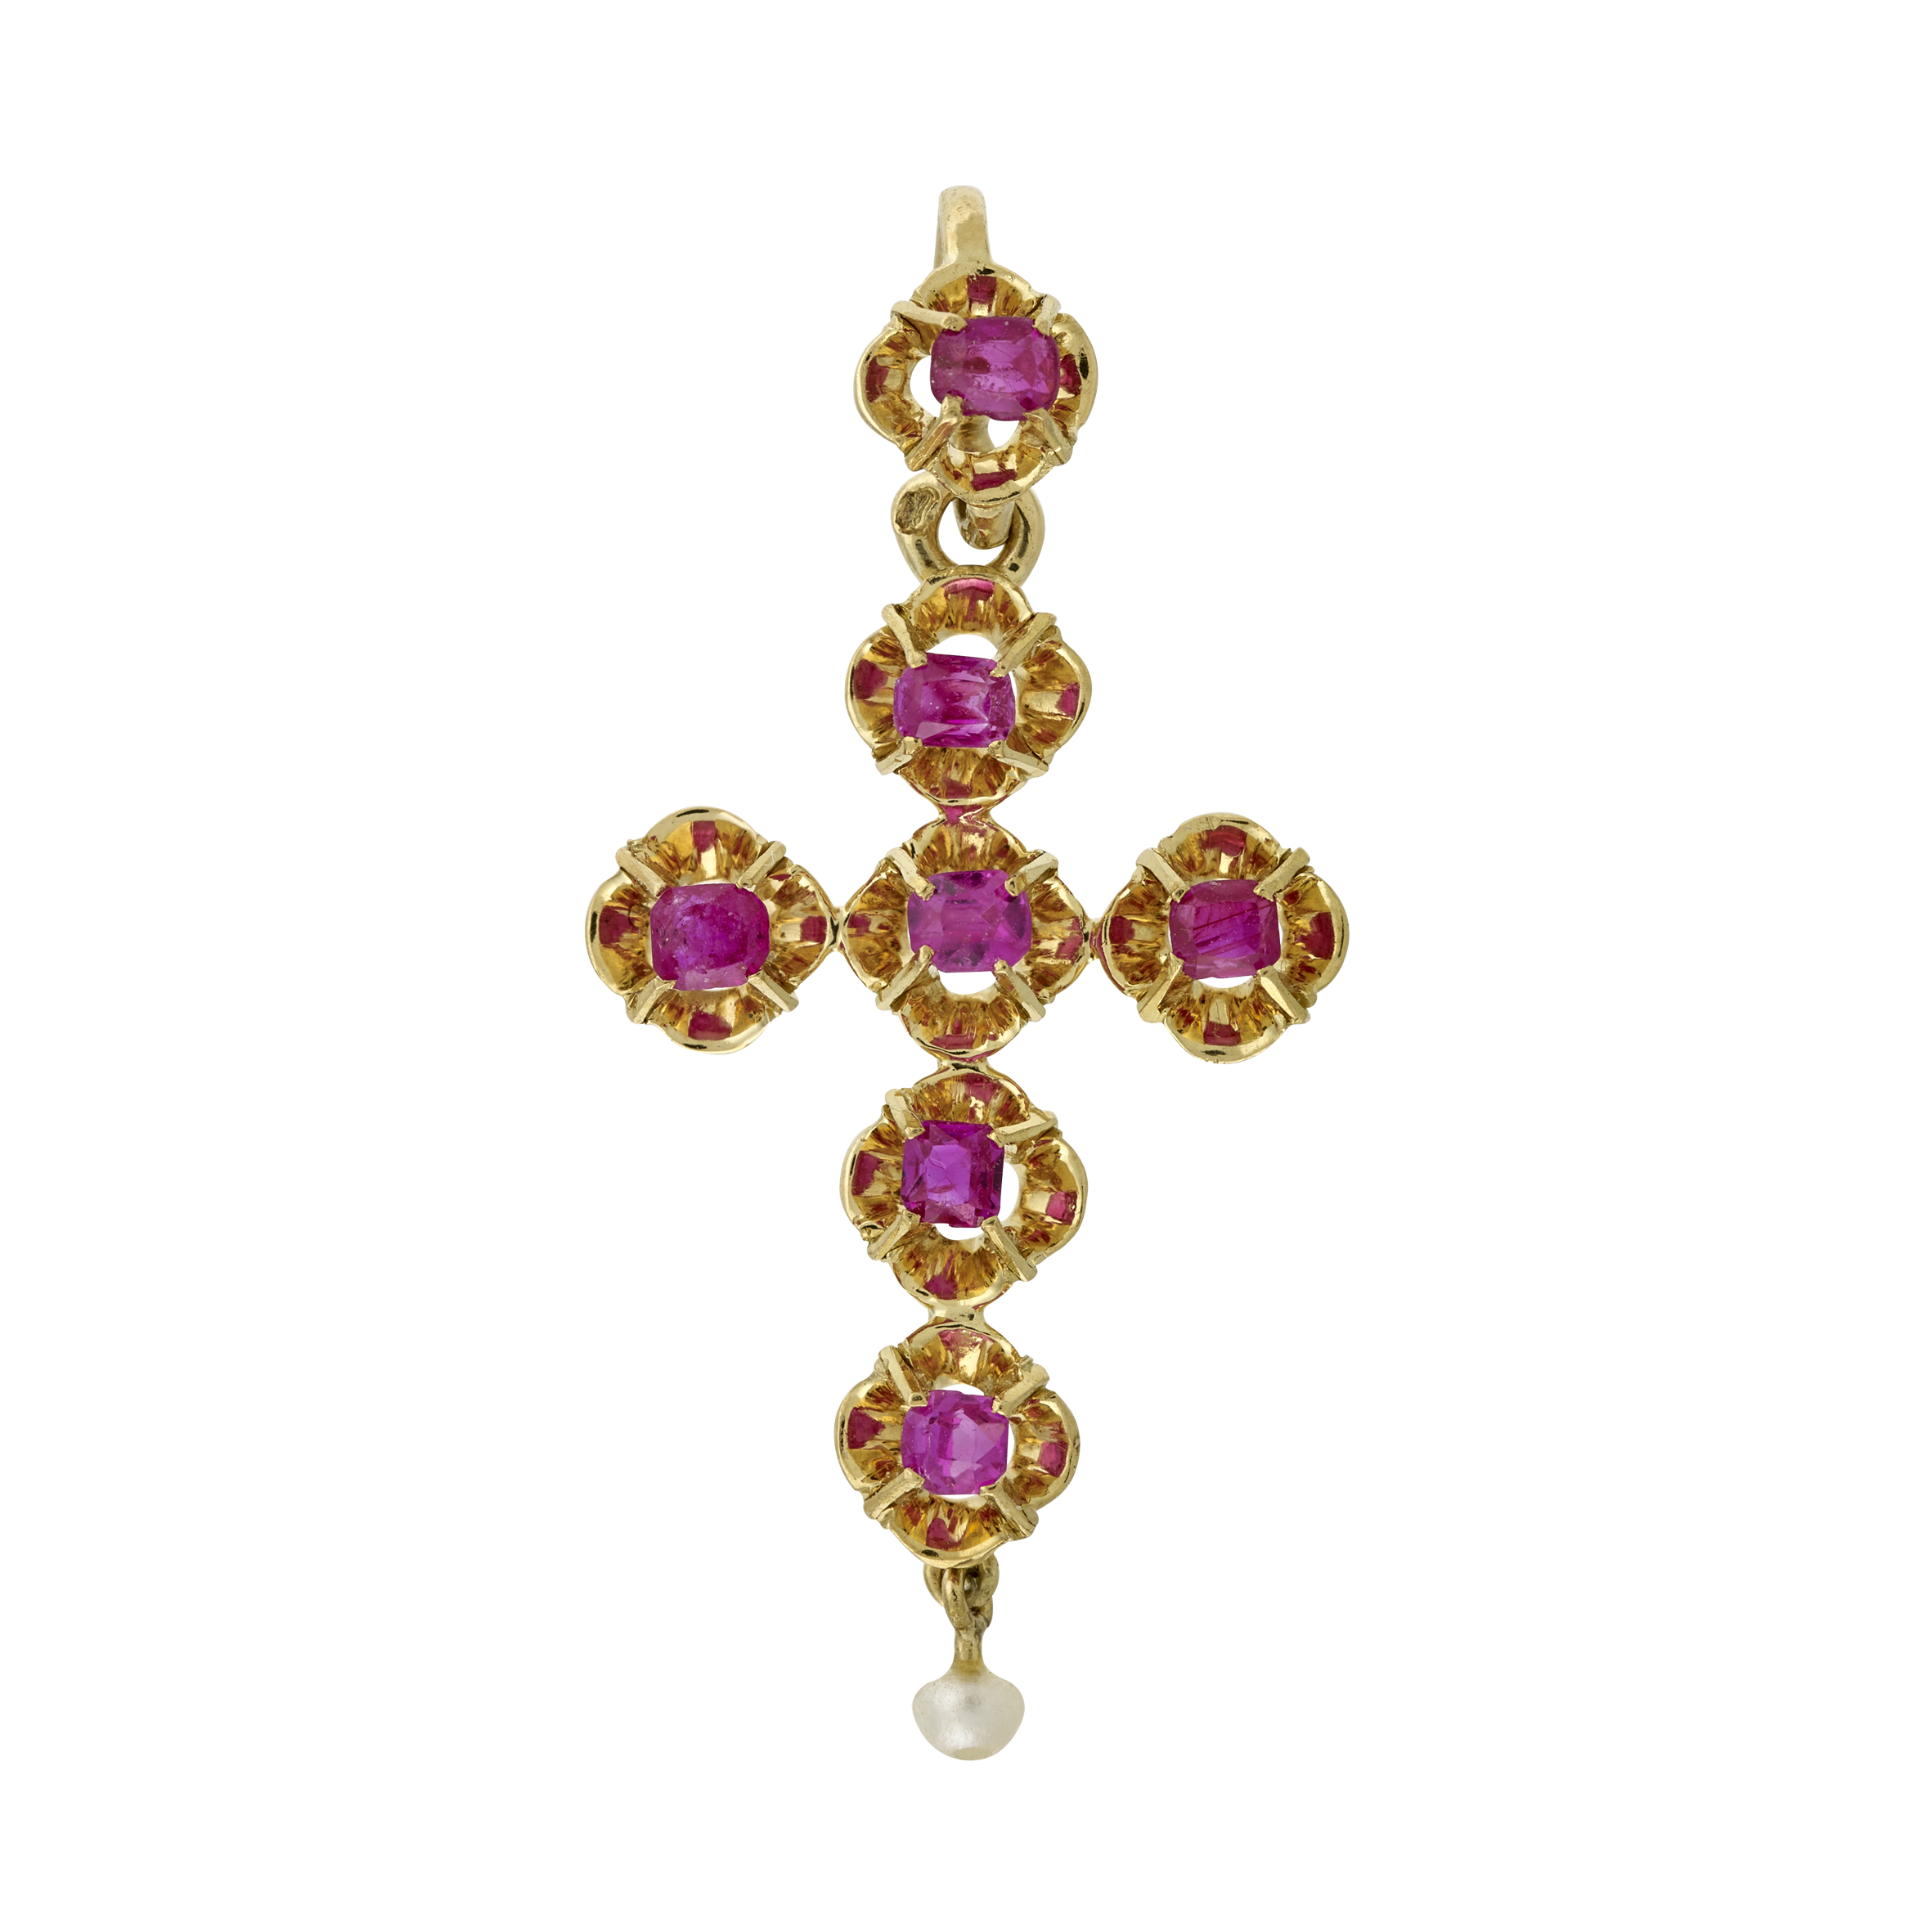 Croix rubis et perle fin XIXe Gerphagnon